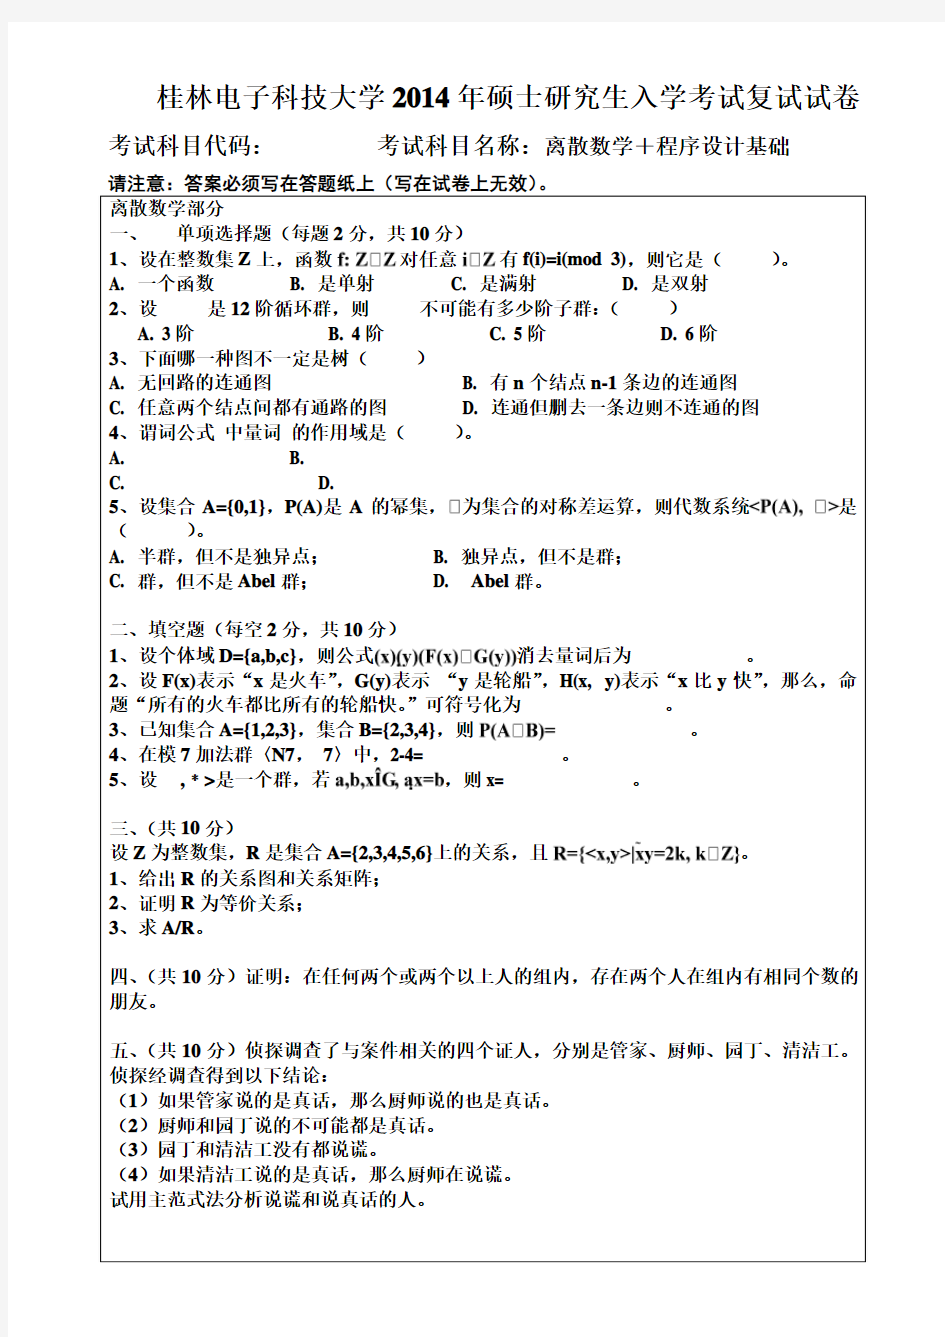 2014桂林电子科技大学硕士研究生入学考试复试试卷离散数学+程序设计基础